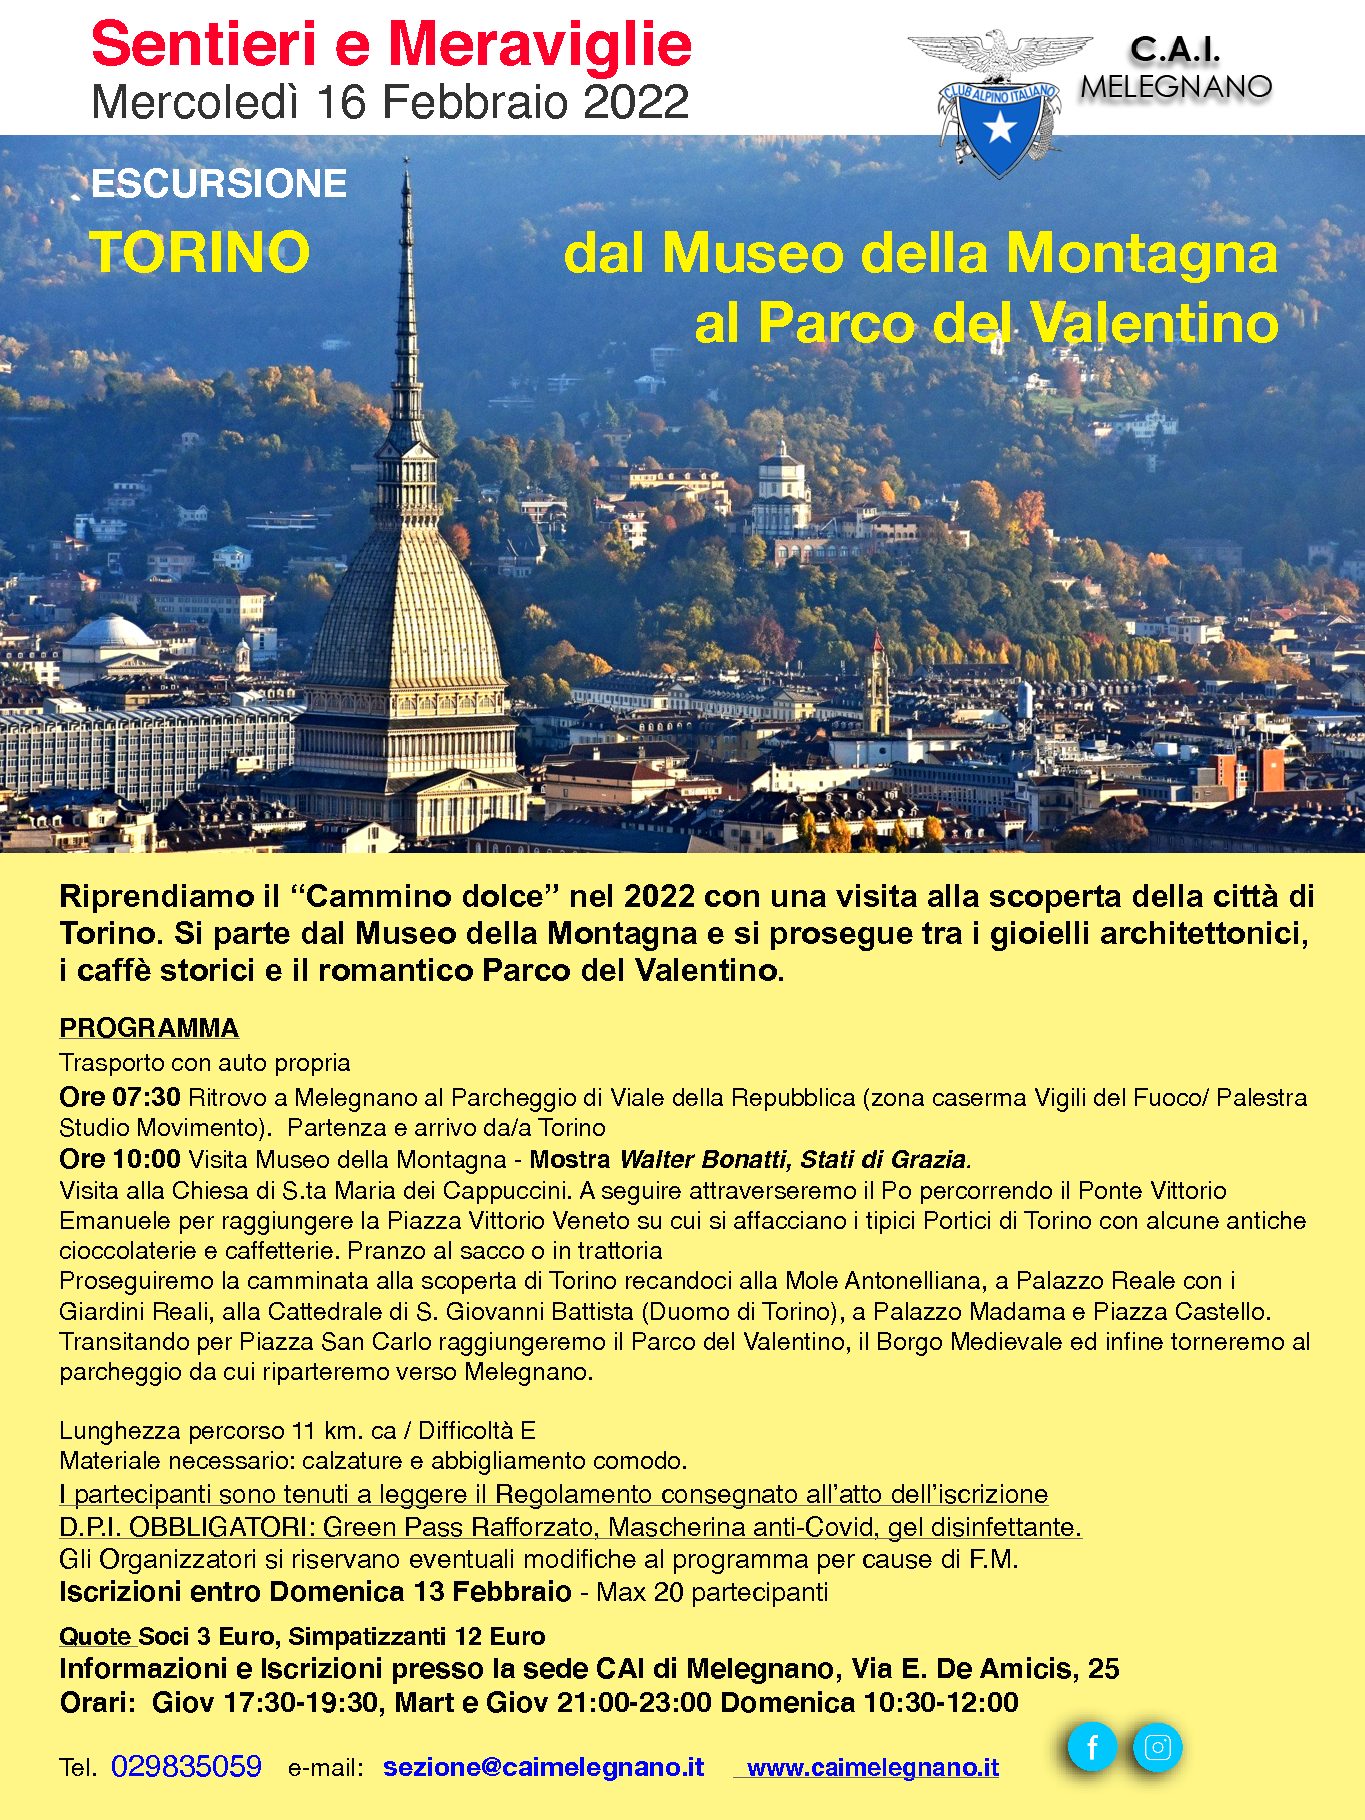 Escursione: Torino dal Museo della Montagna al Parco del Valentino